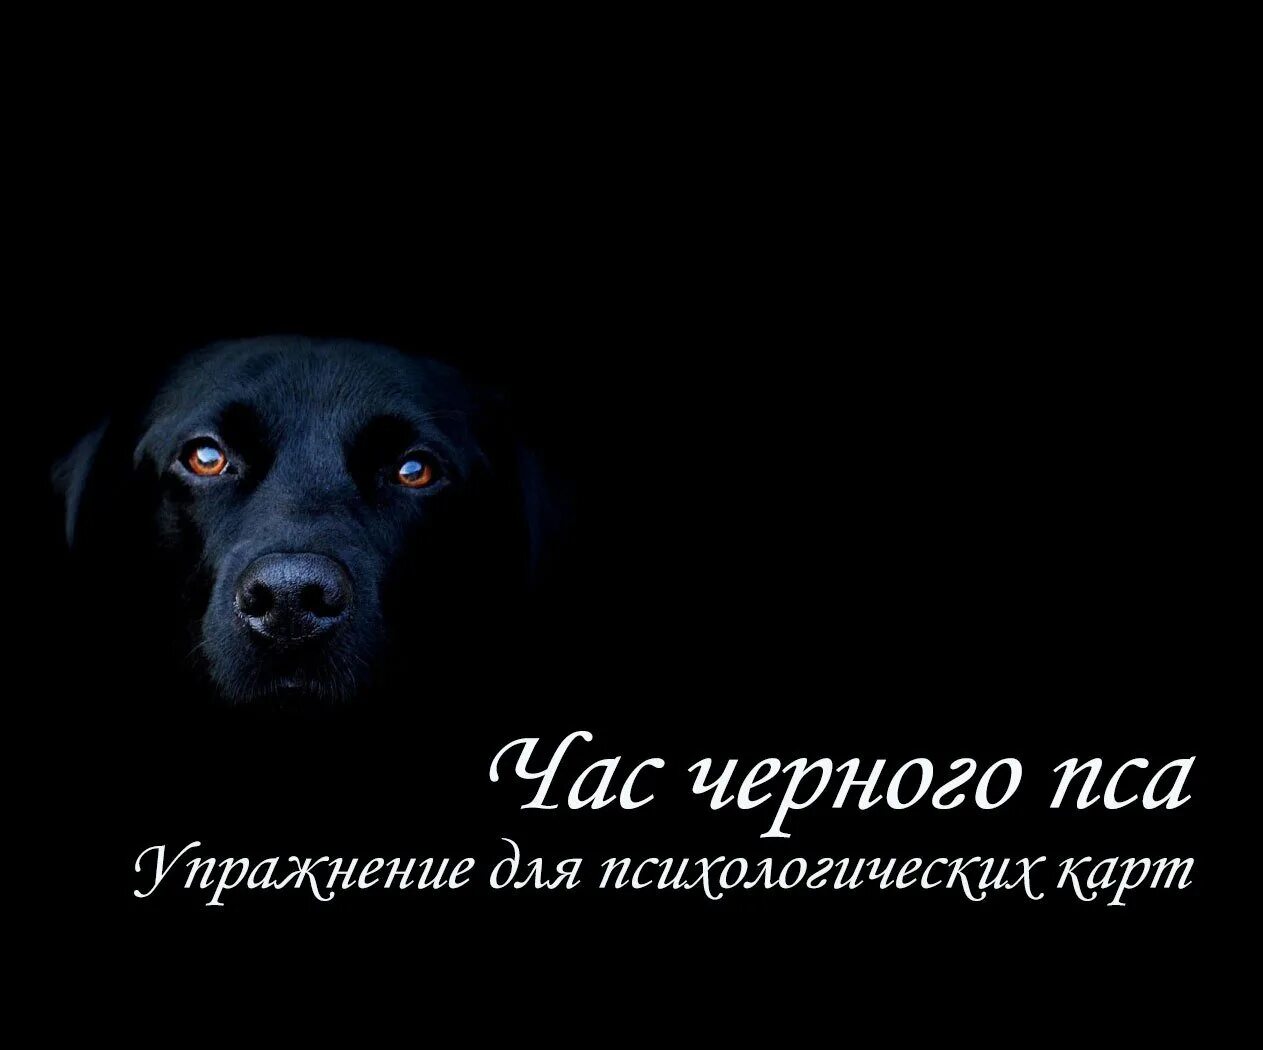 Black dog перевод на русский. Международный день черной собаки. День черных собак. День черных собак 1 октября. День черных собак картинки.